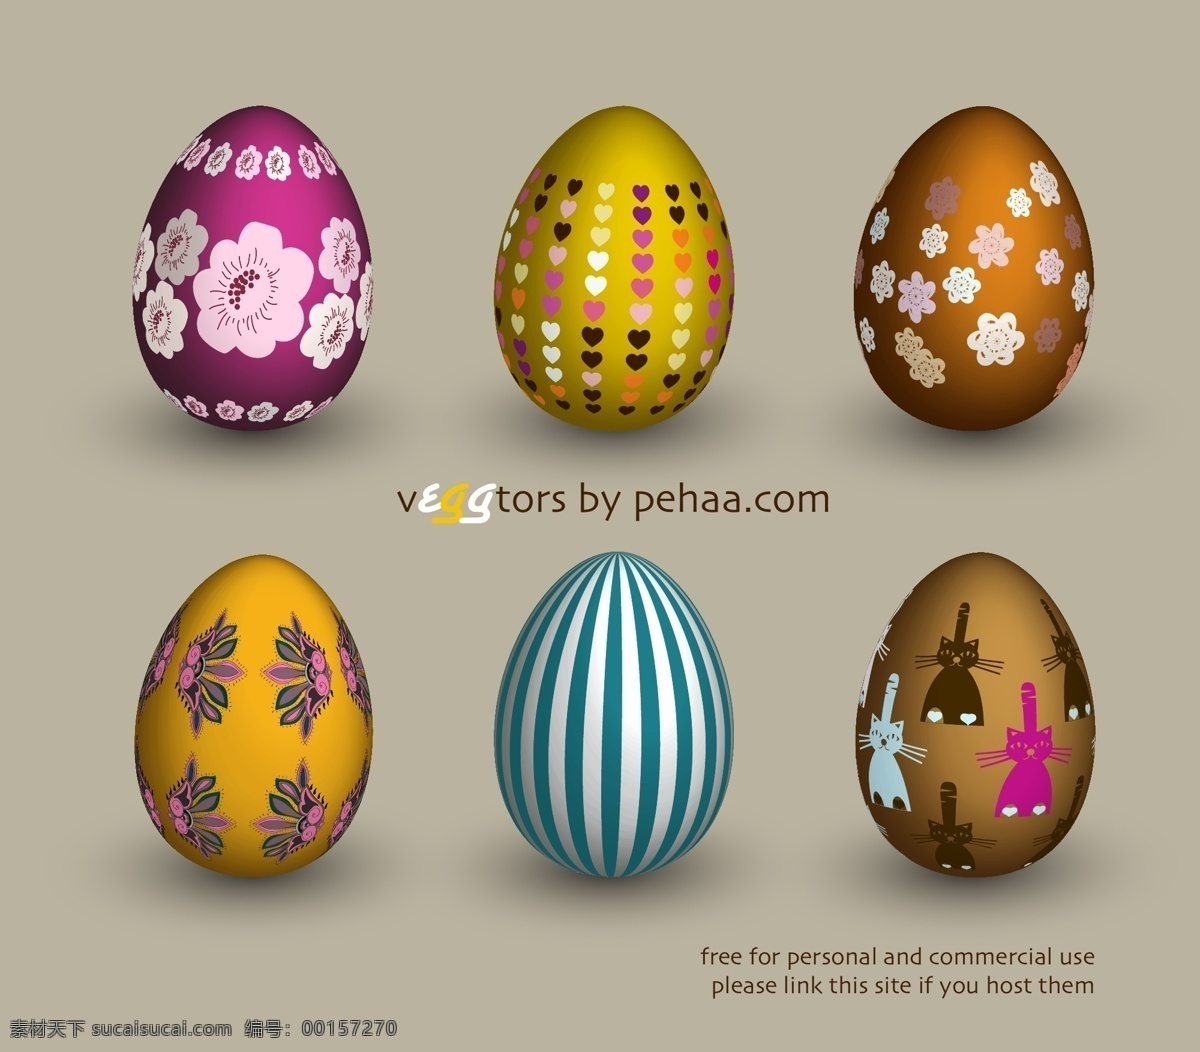 鸡蛋免费下载 点缀 广告素材 花纹 鸡蛋 金蛋 矢量素材 条纹 星光 星形 蛋蛋 花蛋 花纹蛋 矢量蛋 矢量图 其他矢量图